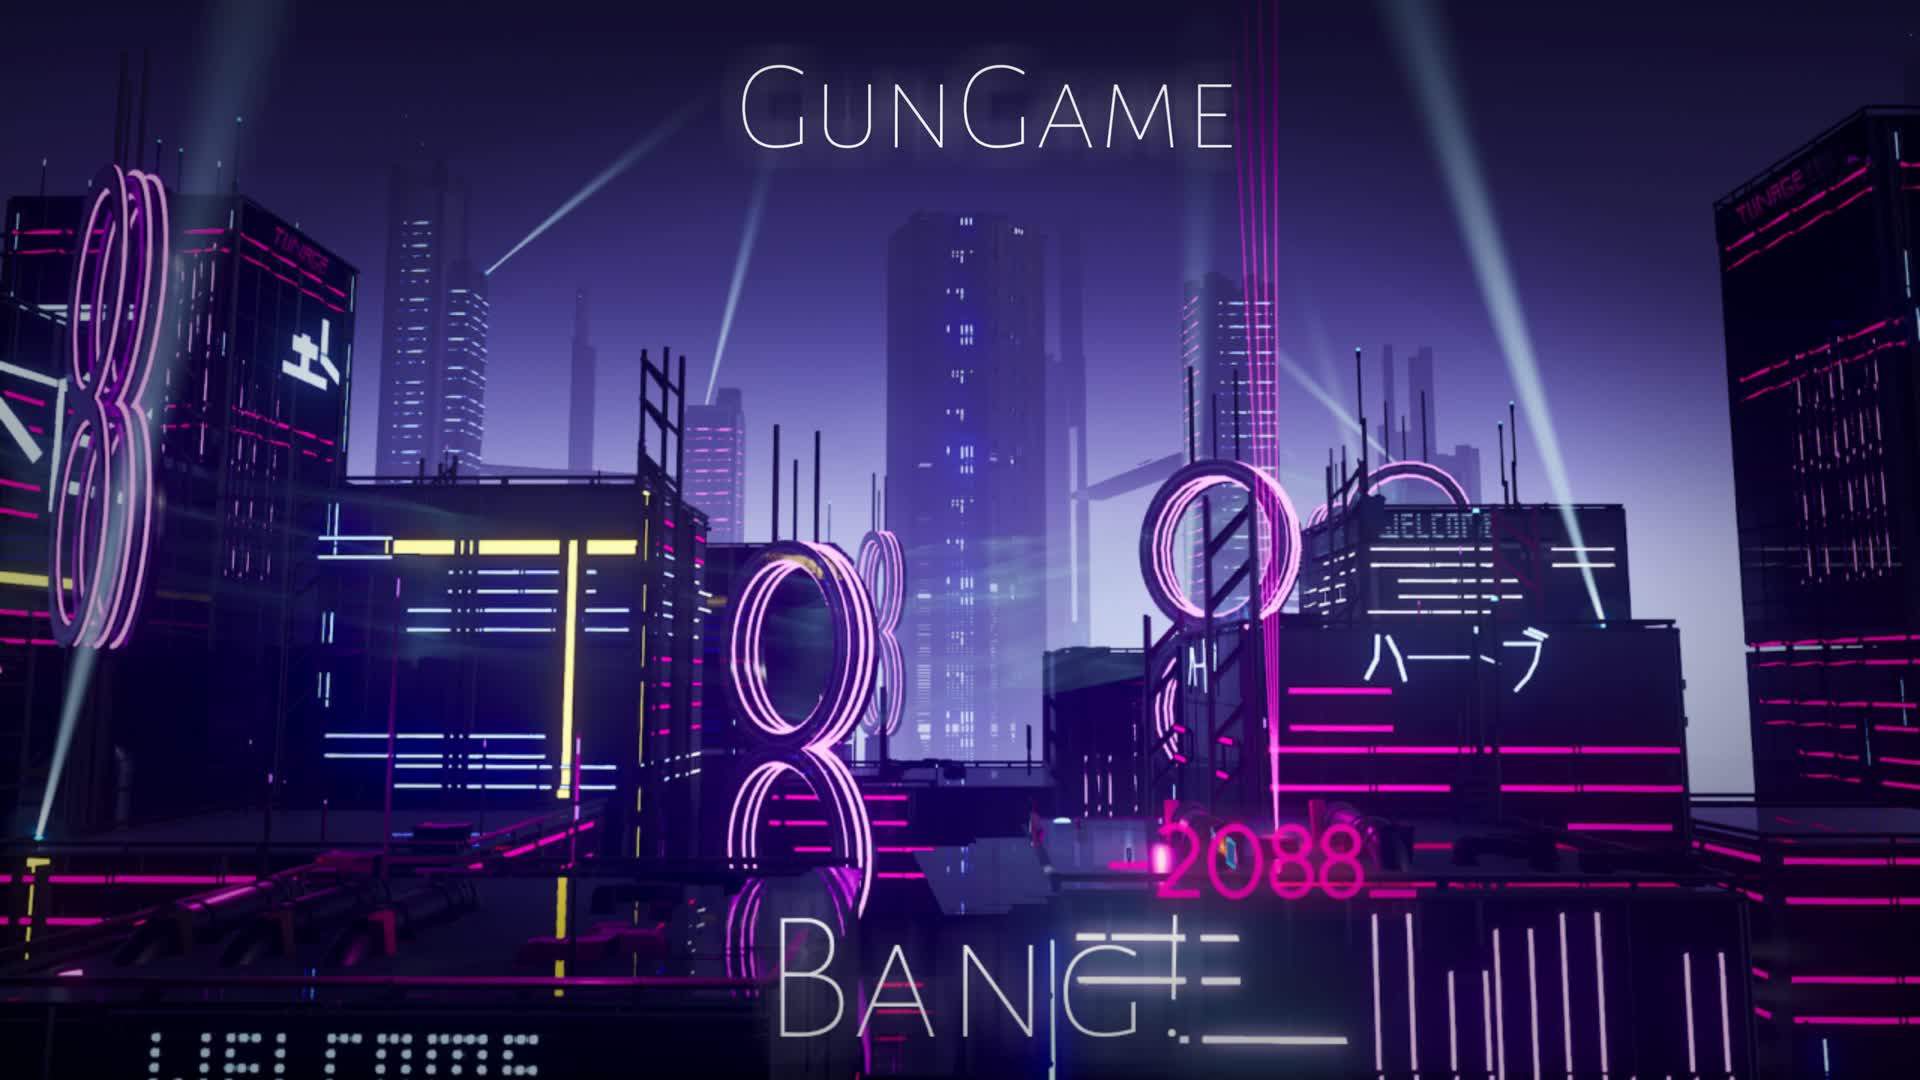 BANG! -2088_ •GUNGAME•